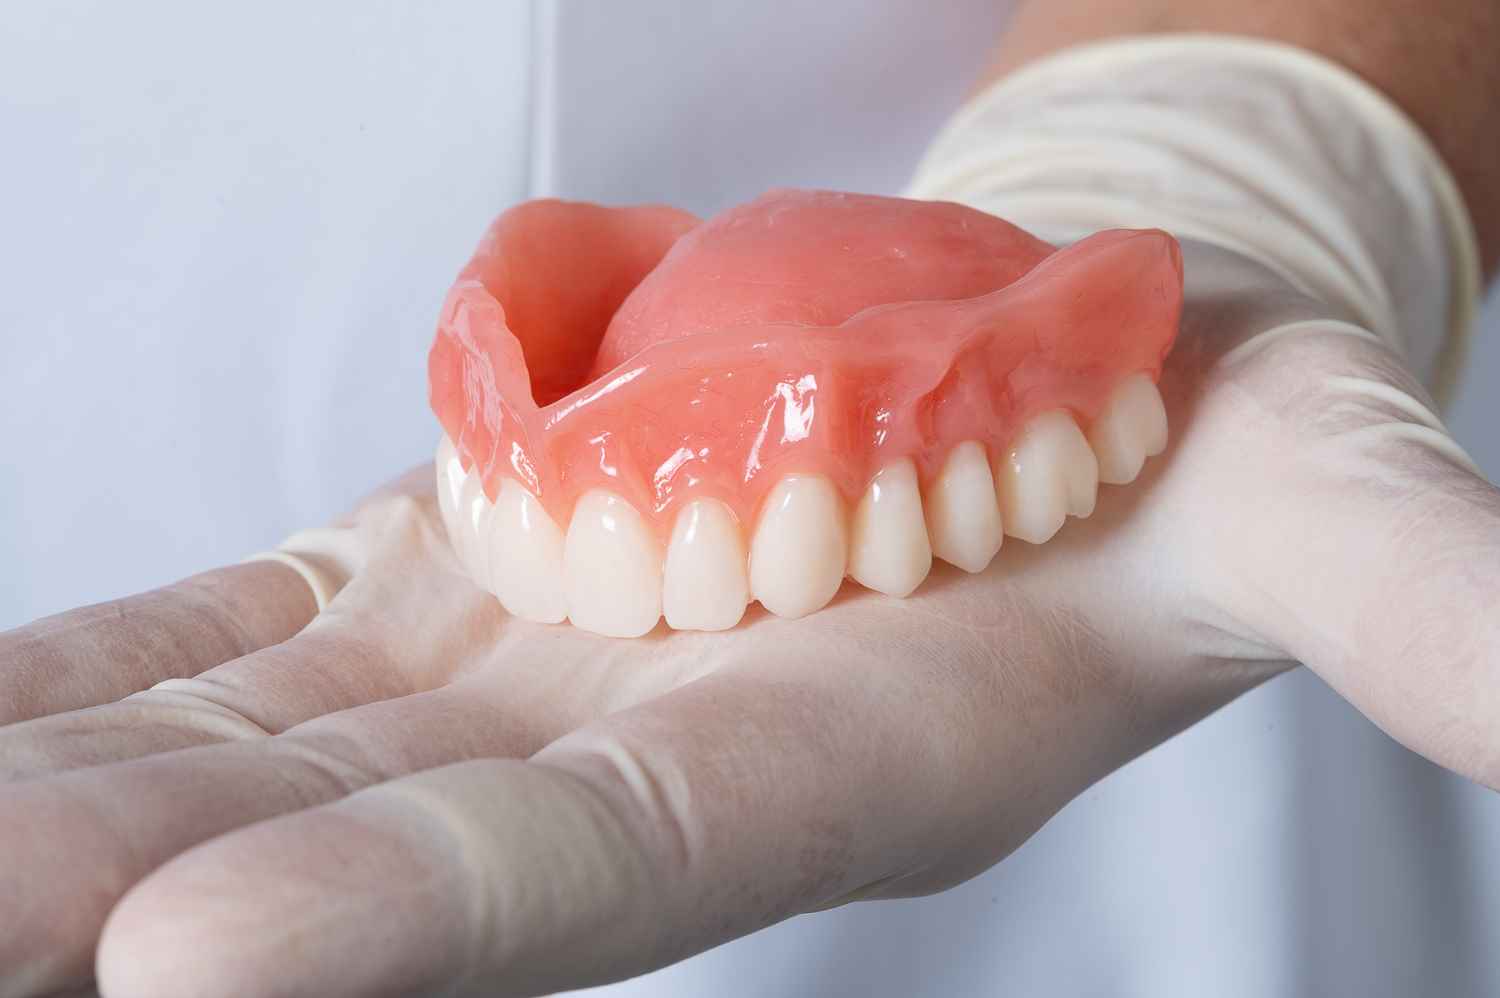 Temporary Dentures, Dental Glue, Dentures Prosthesis, Temporary